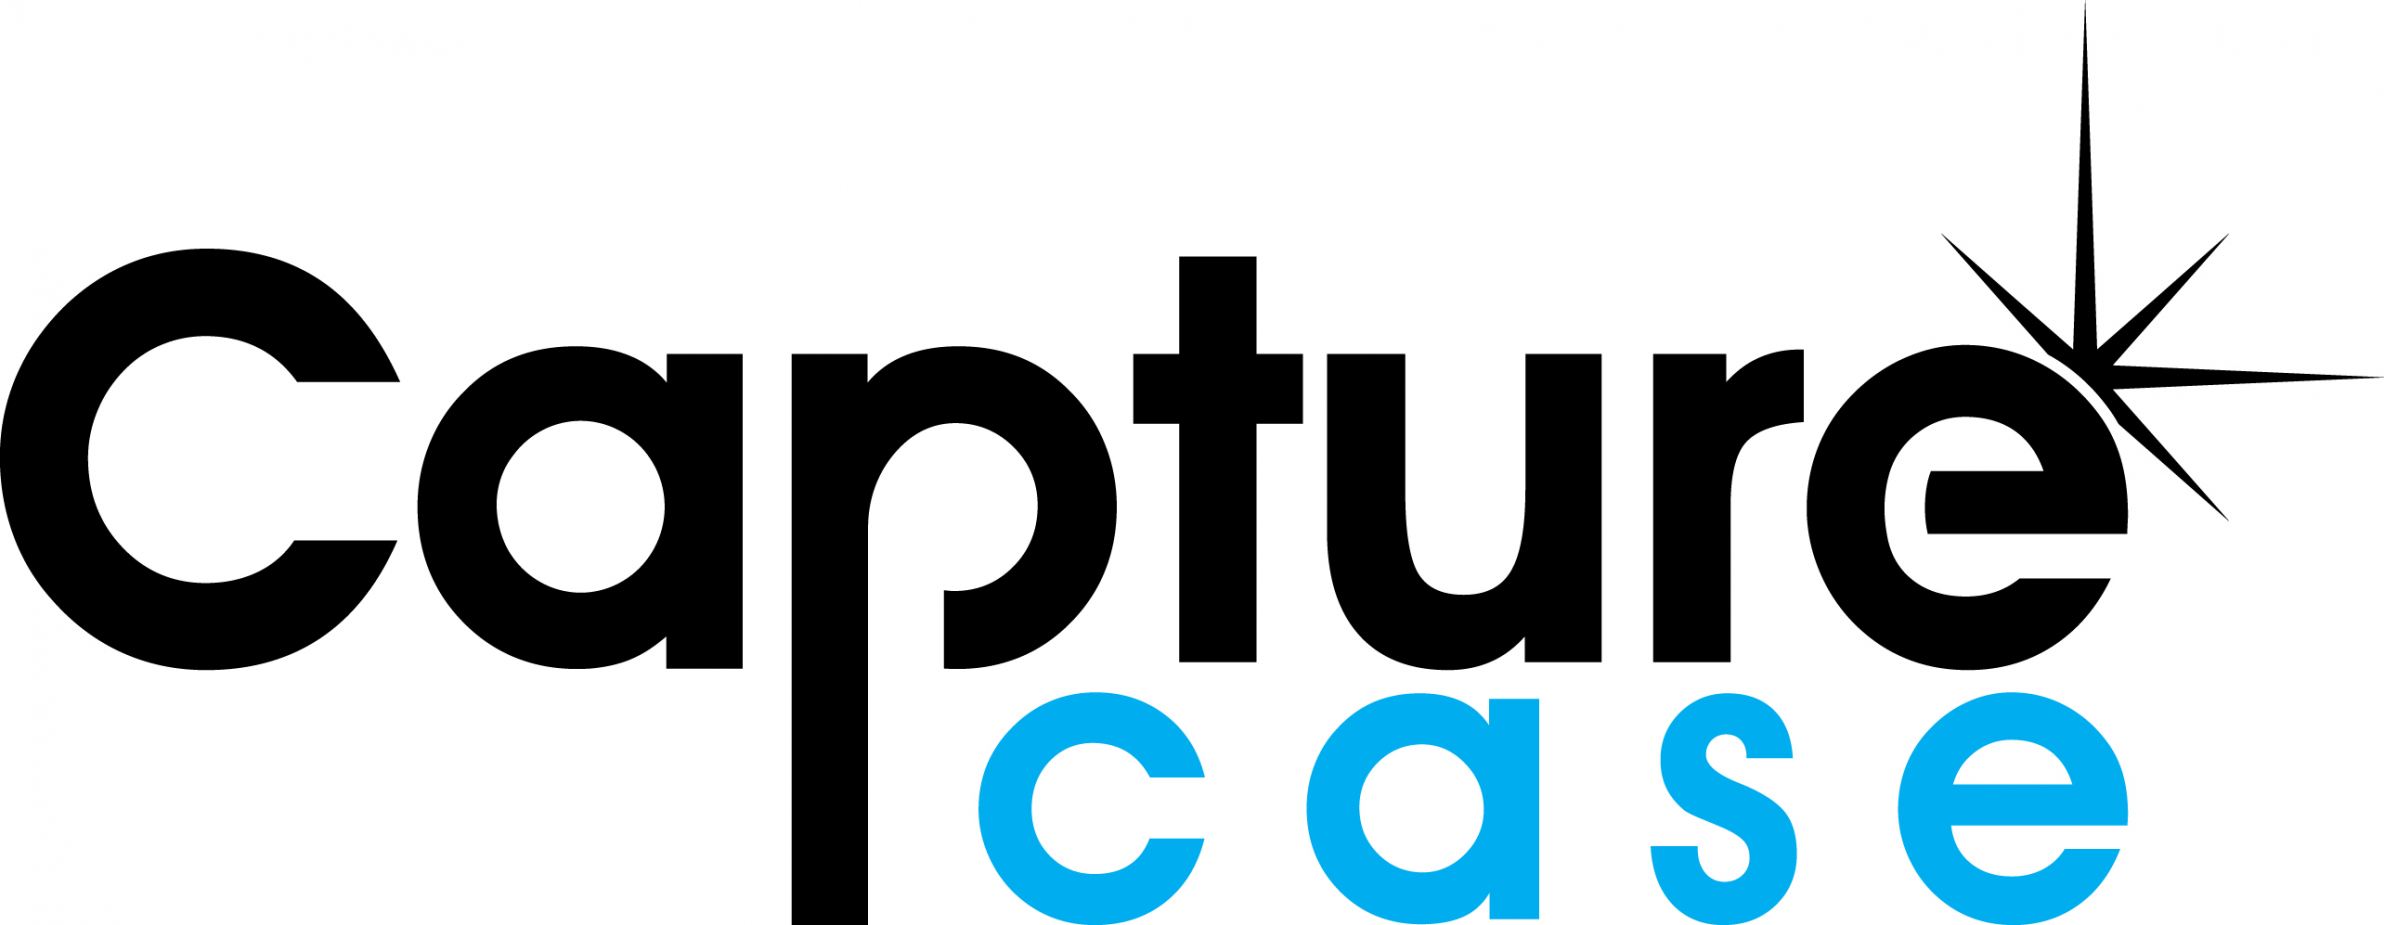 capturecase Logo